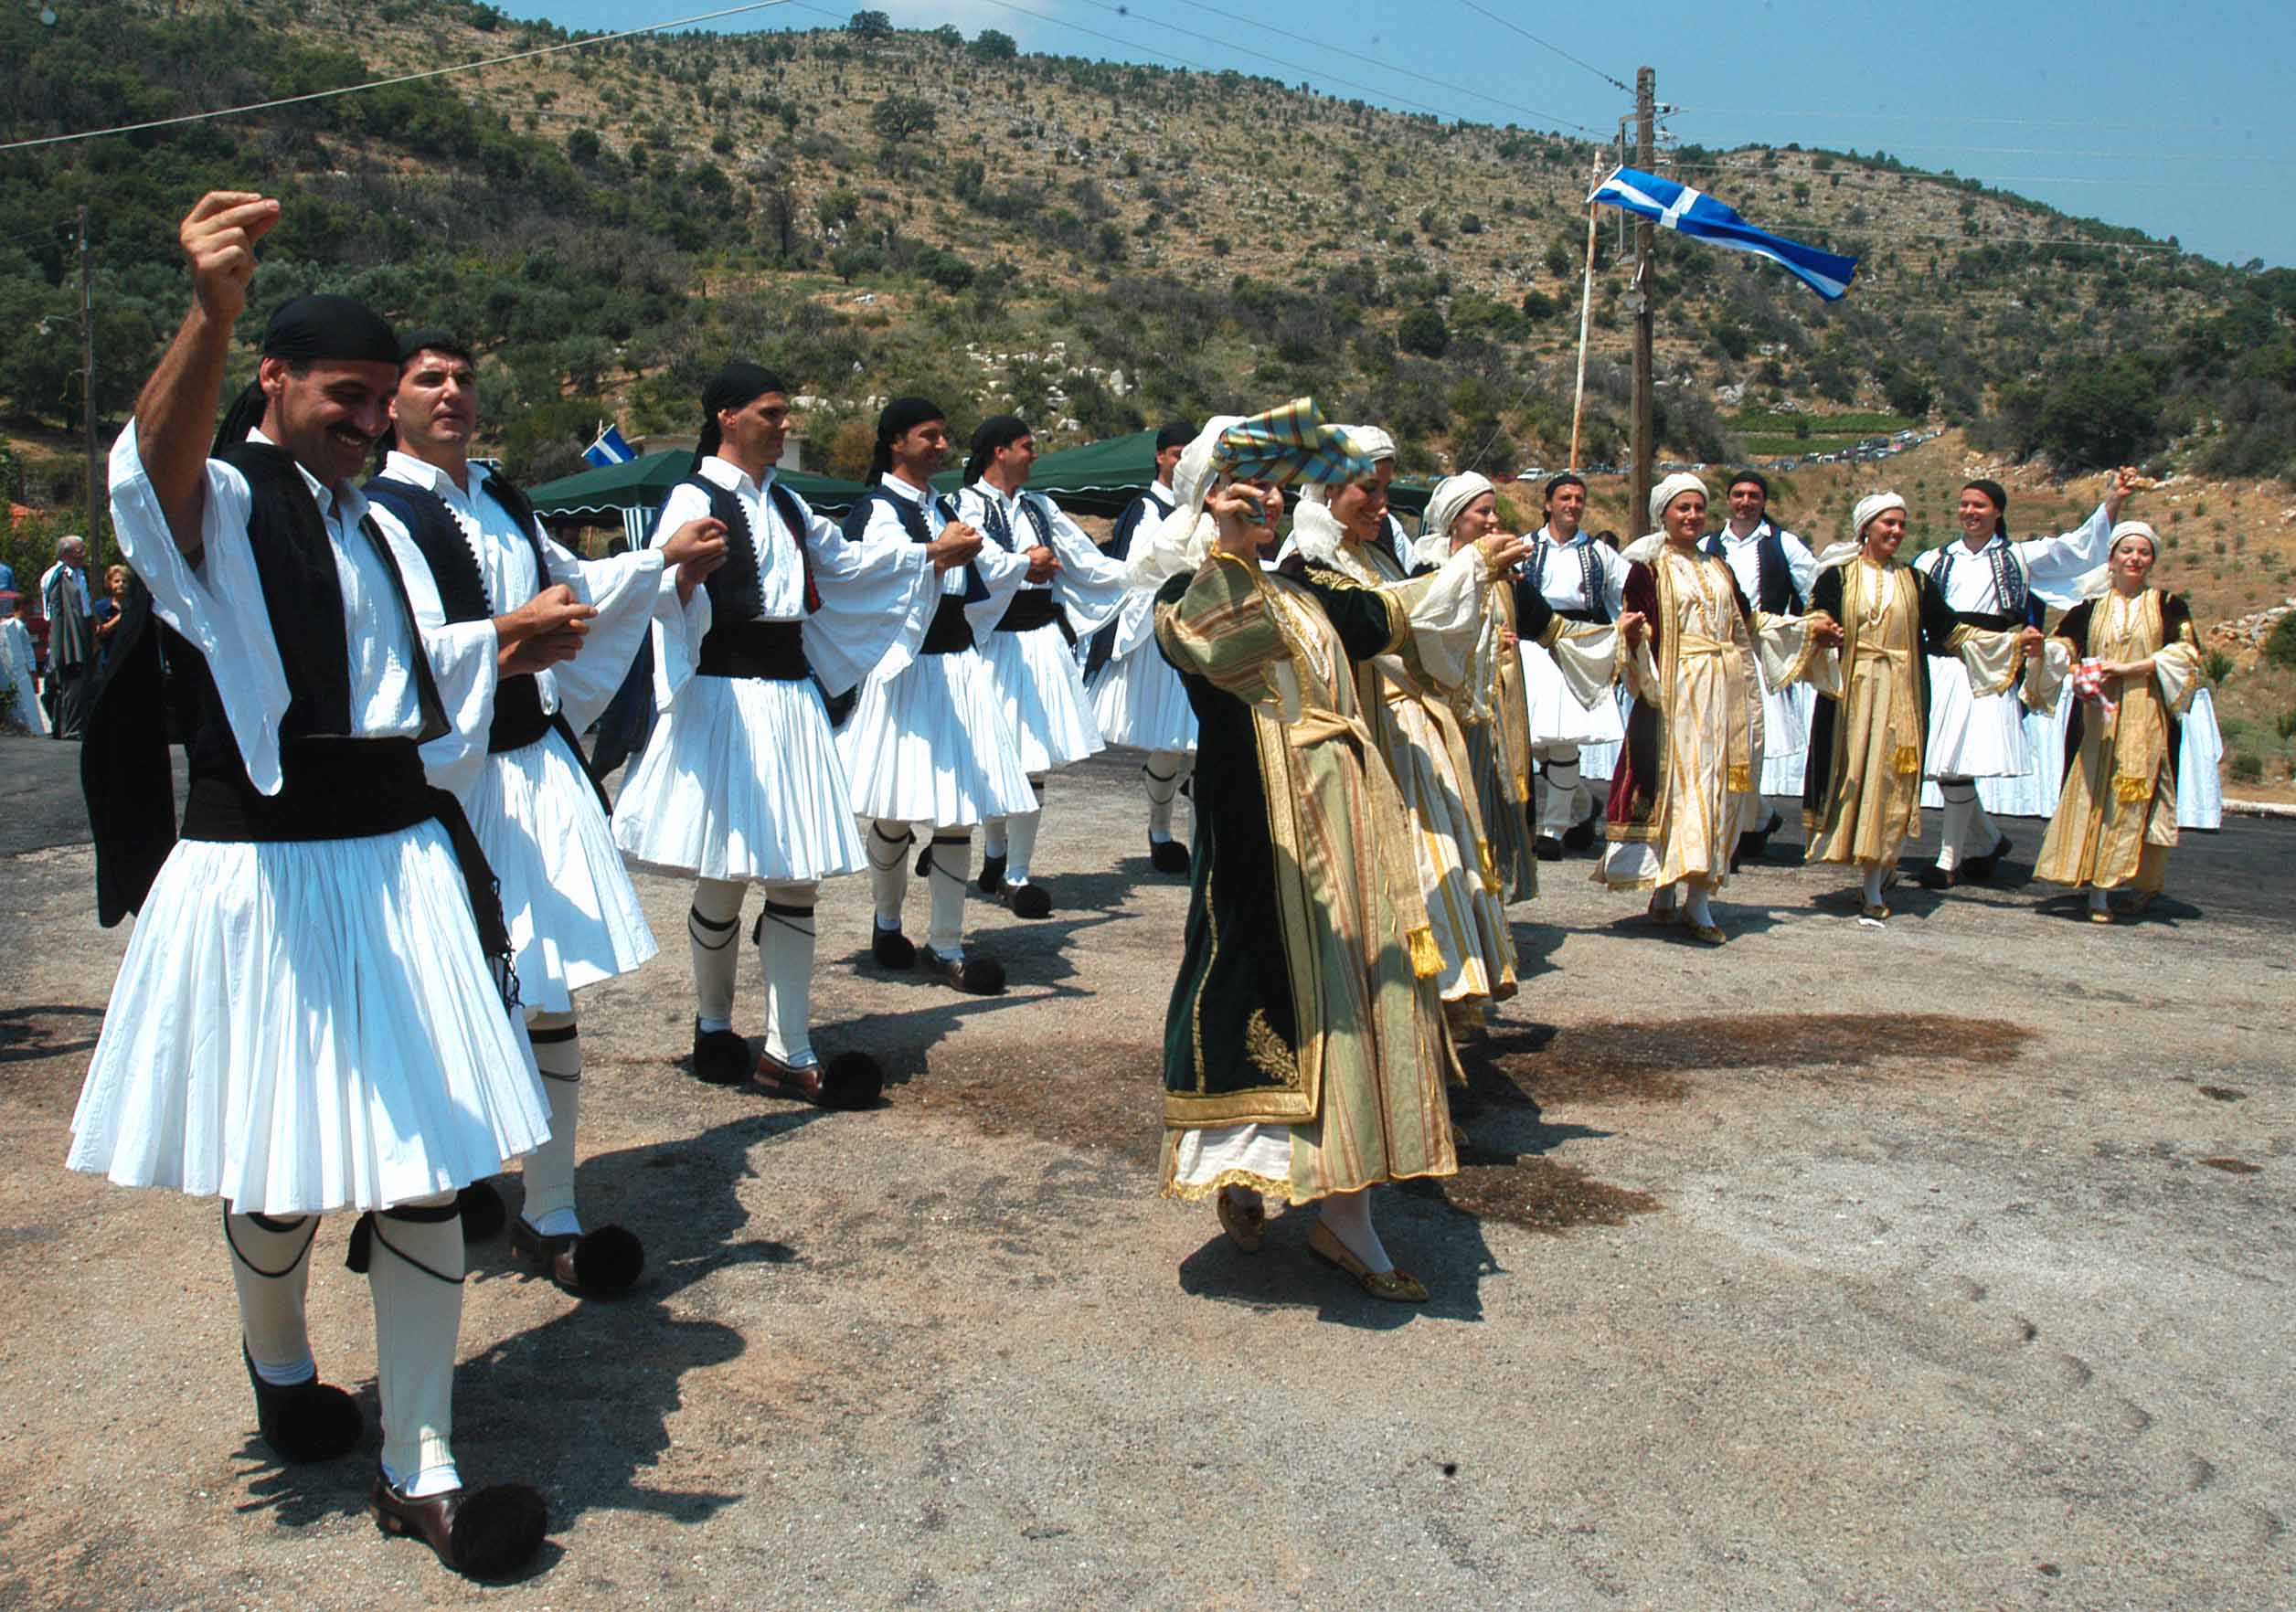 Καλή φυσική κατάσταση χαρίζουν οι ελληνικοί παραδοσιακοί χοροί